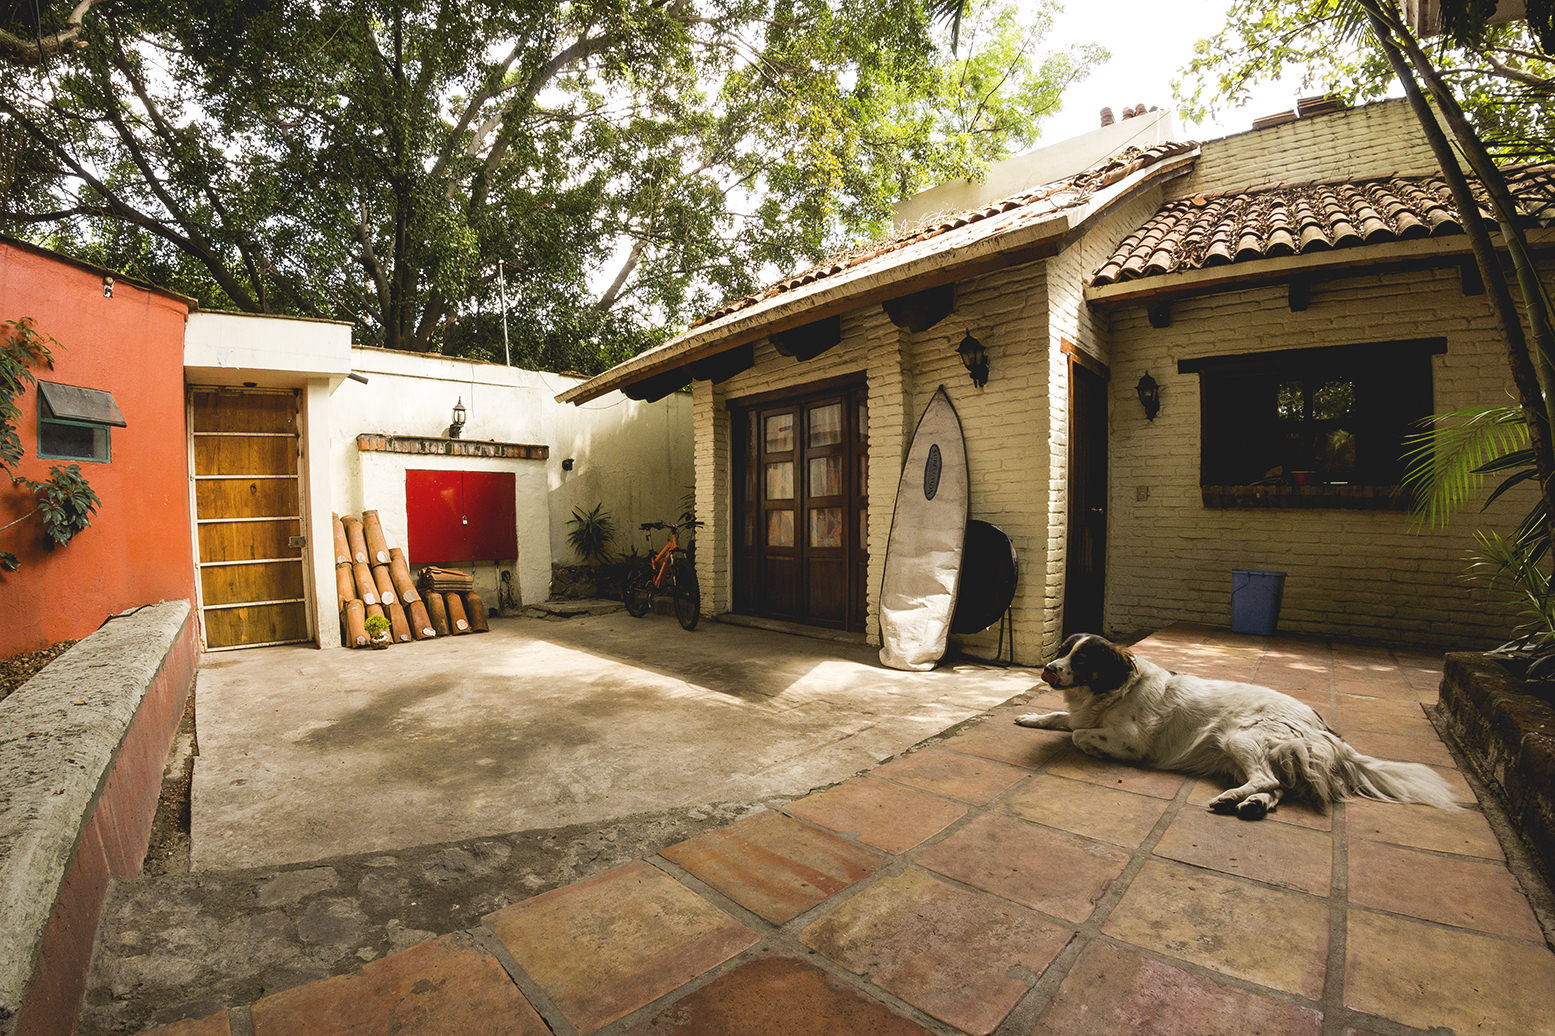 Casa Villa Jardin – Cabin in a private forest